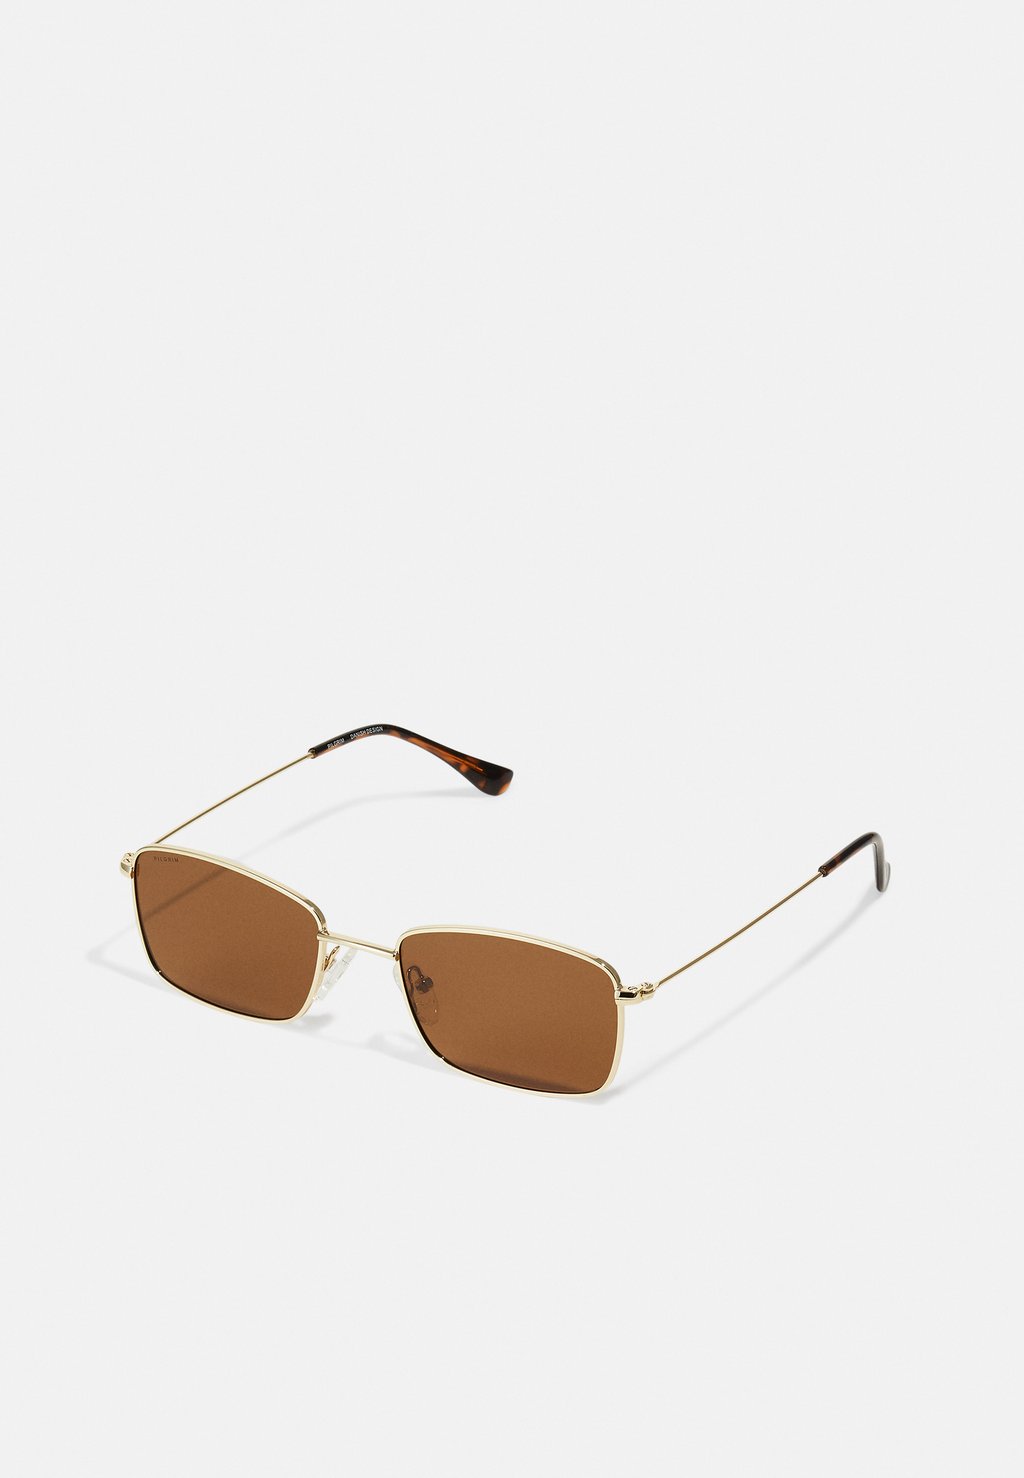 Солнцезащитные очки YEIDER SUNGLASSES Pilgrim, цвет brown/gold-coloured ost – jackie brown coloured vinyl lp